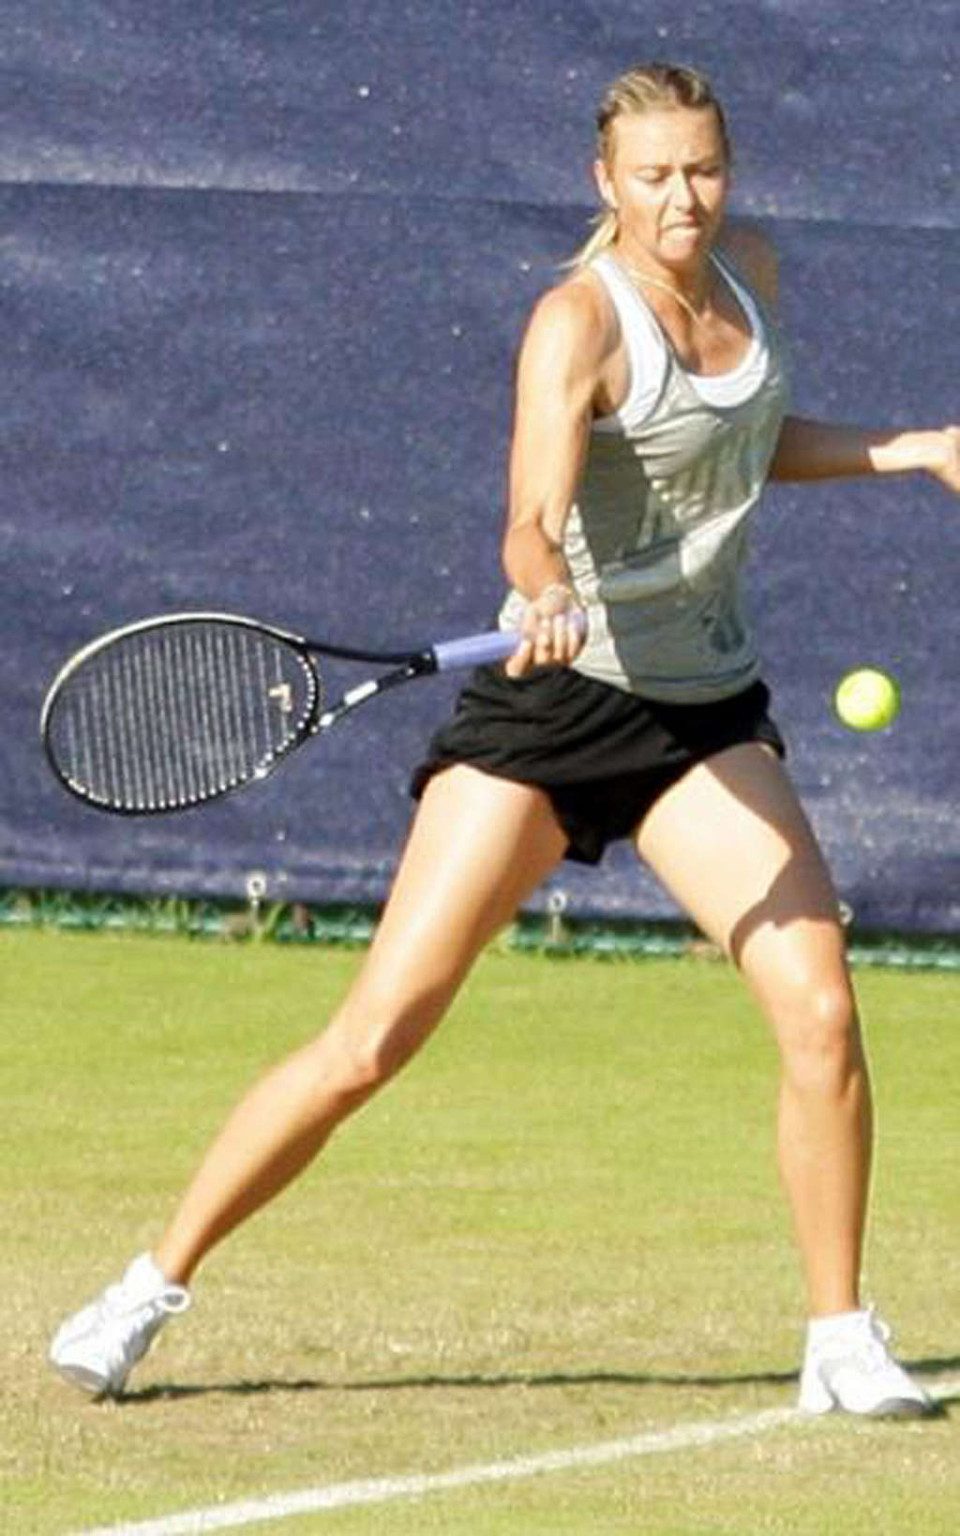 Maria Sharapova nipple slip while play tennis paparazzi shoots #75346420